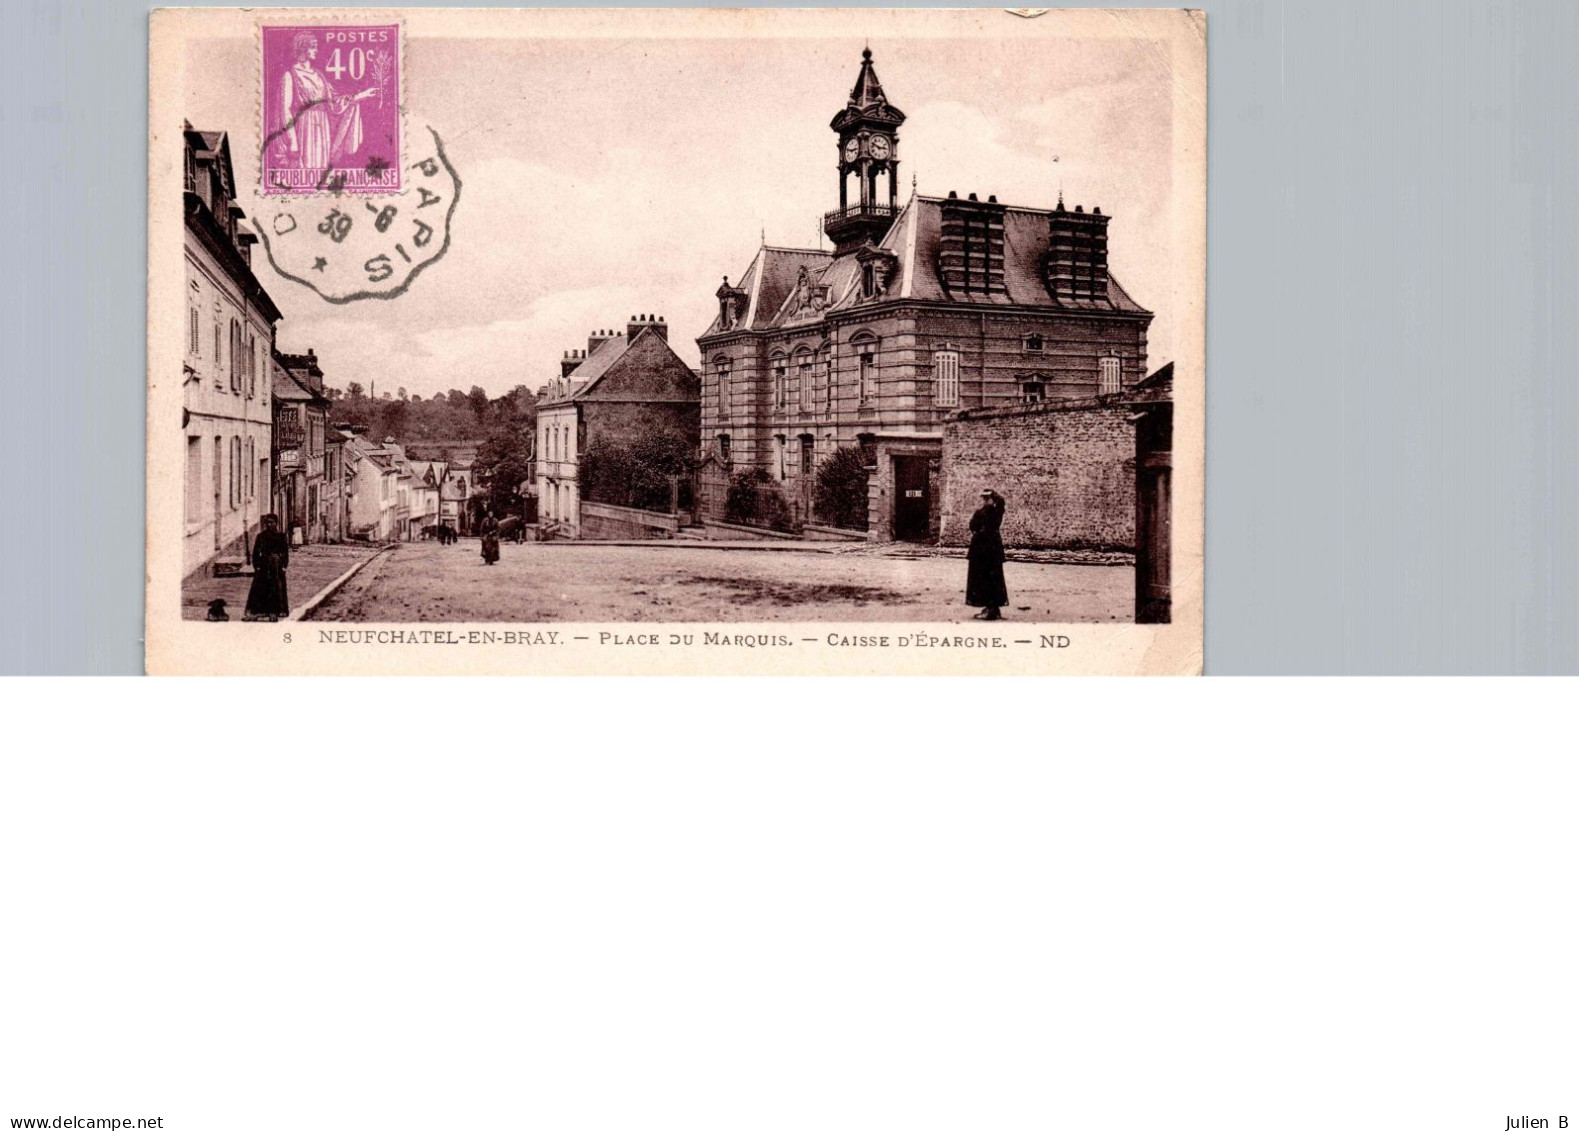 Neufchâtel-en-Bray, Place Du Marquis, Caisse D'épargne, 14 Juin 1938, Timbre 40c, Flamme Postale - Neufchâtel En Bray